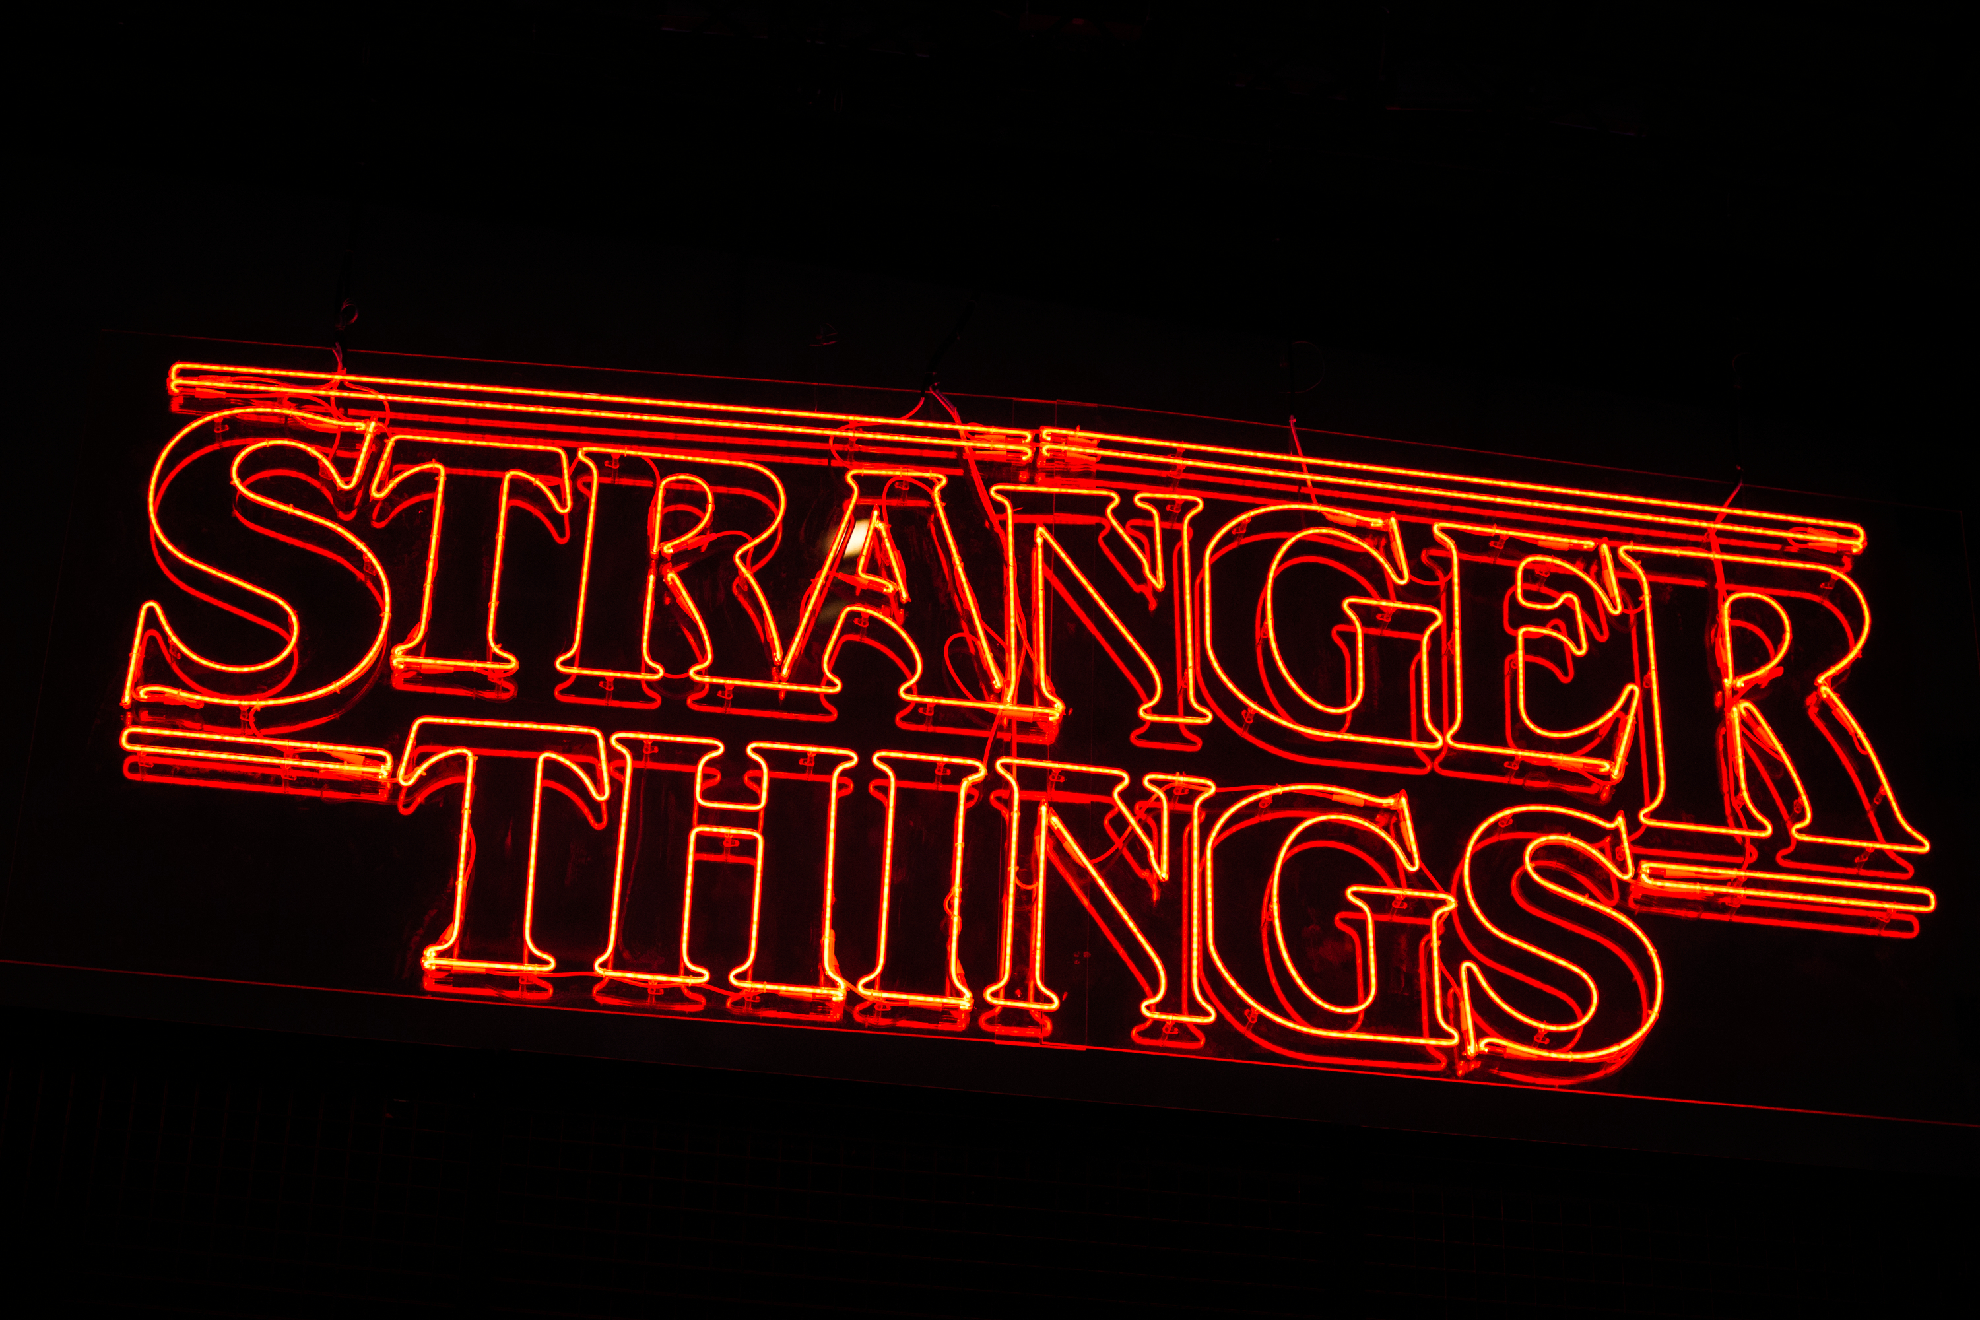 Así será LA TEMPORADA 5 de Stranger Things! ¿Cuando se estrena?, TEMPORADA  FINAL 🔥